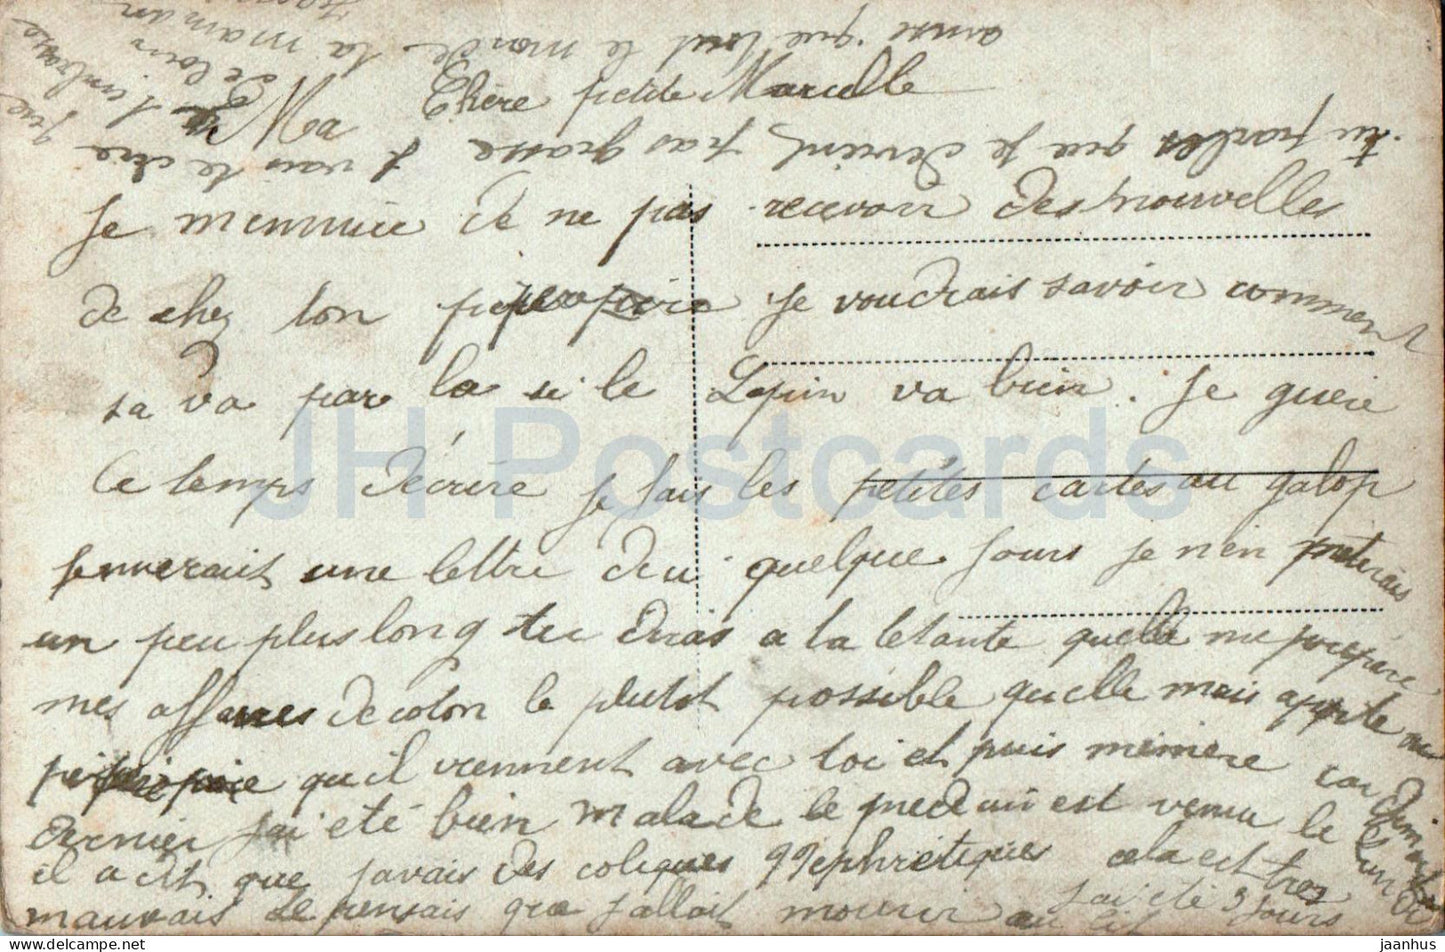 Si cette image a su Vous plaire, dites moi ce qu'elle vous suggere - woman - cat - 1834/4 - old postcard - France - used